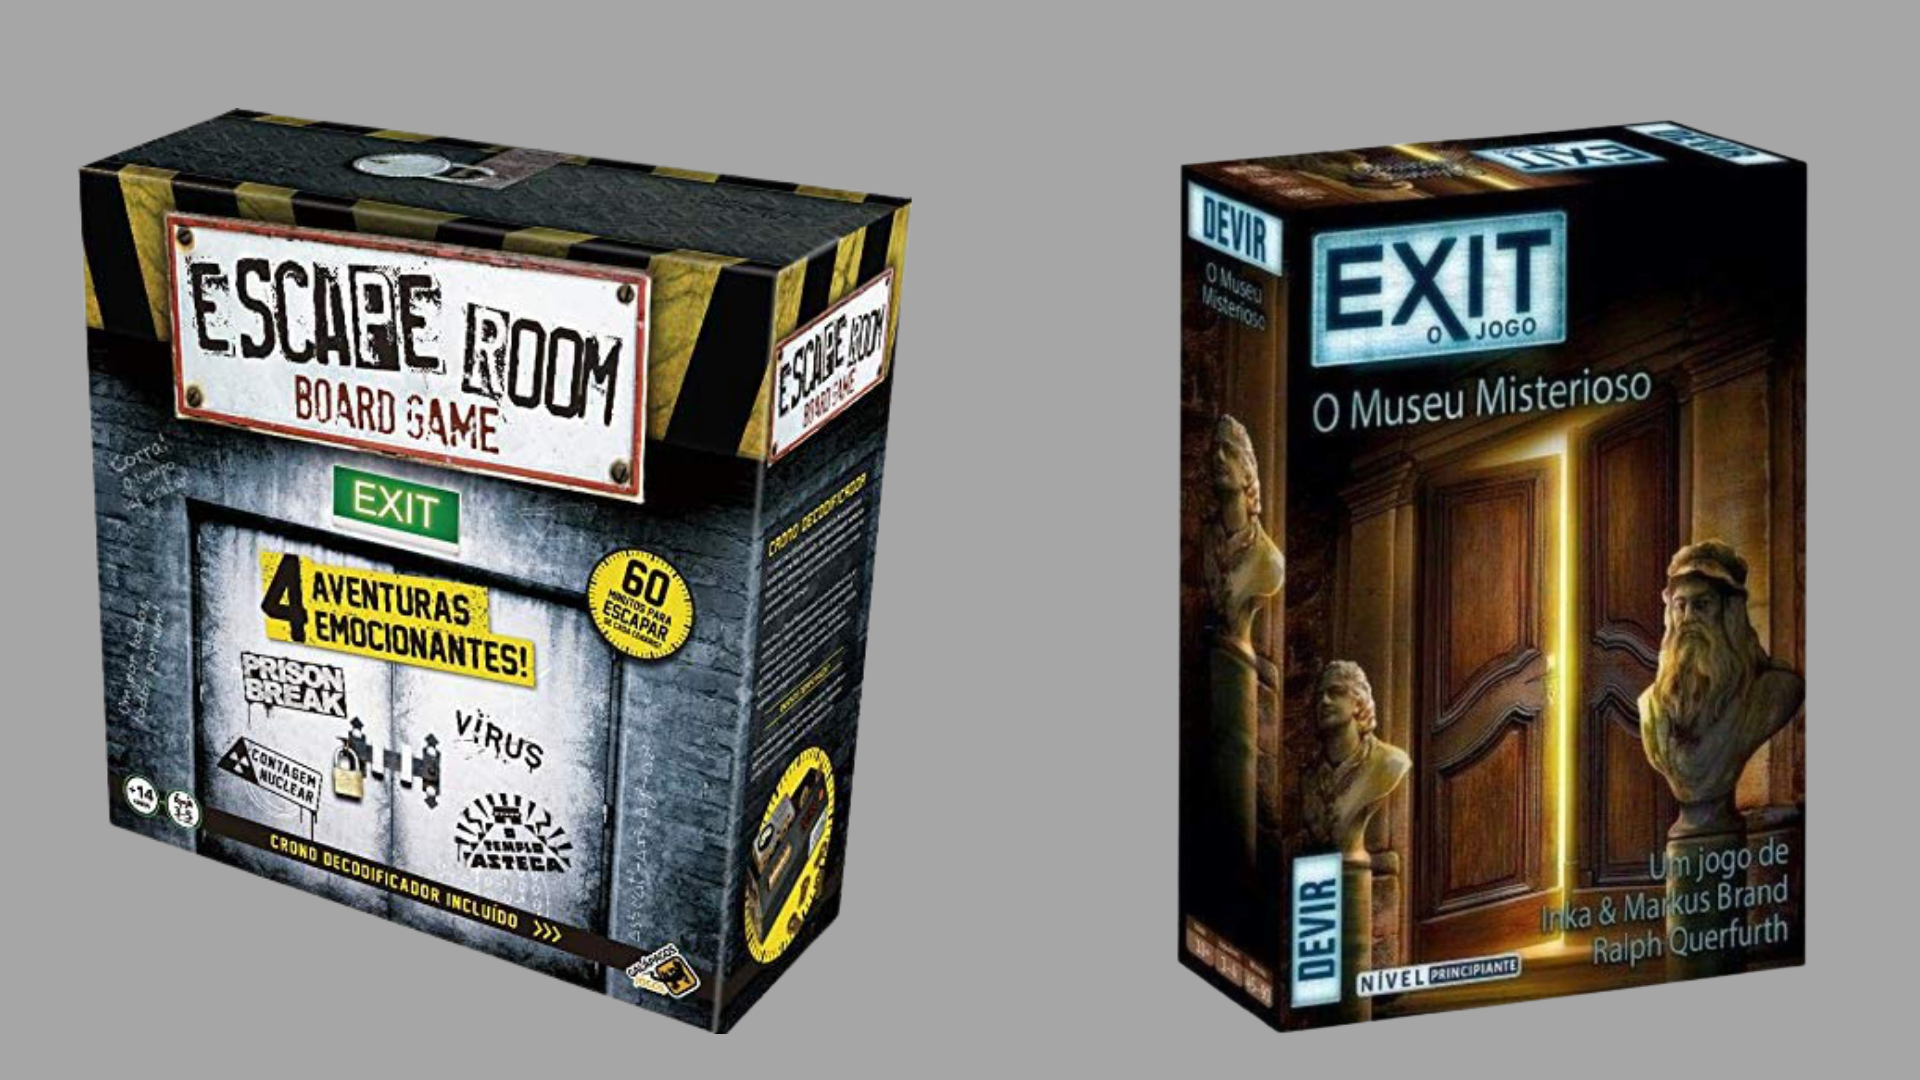 Exit A Montanha Russa Assombrada Jogo Escape Room em Promoção na Americanas